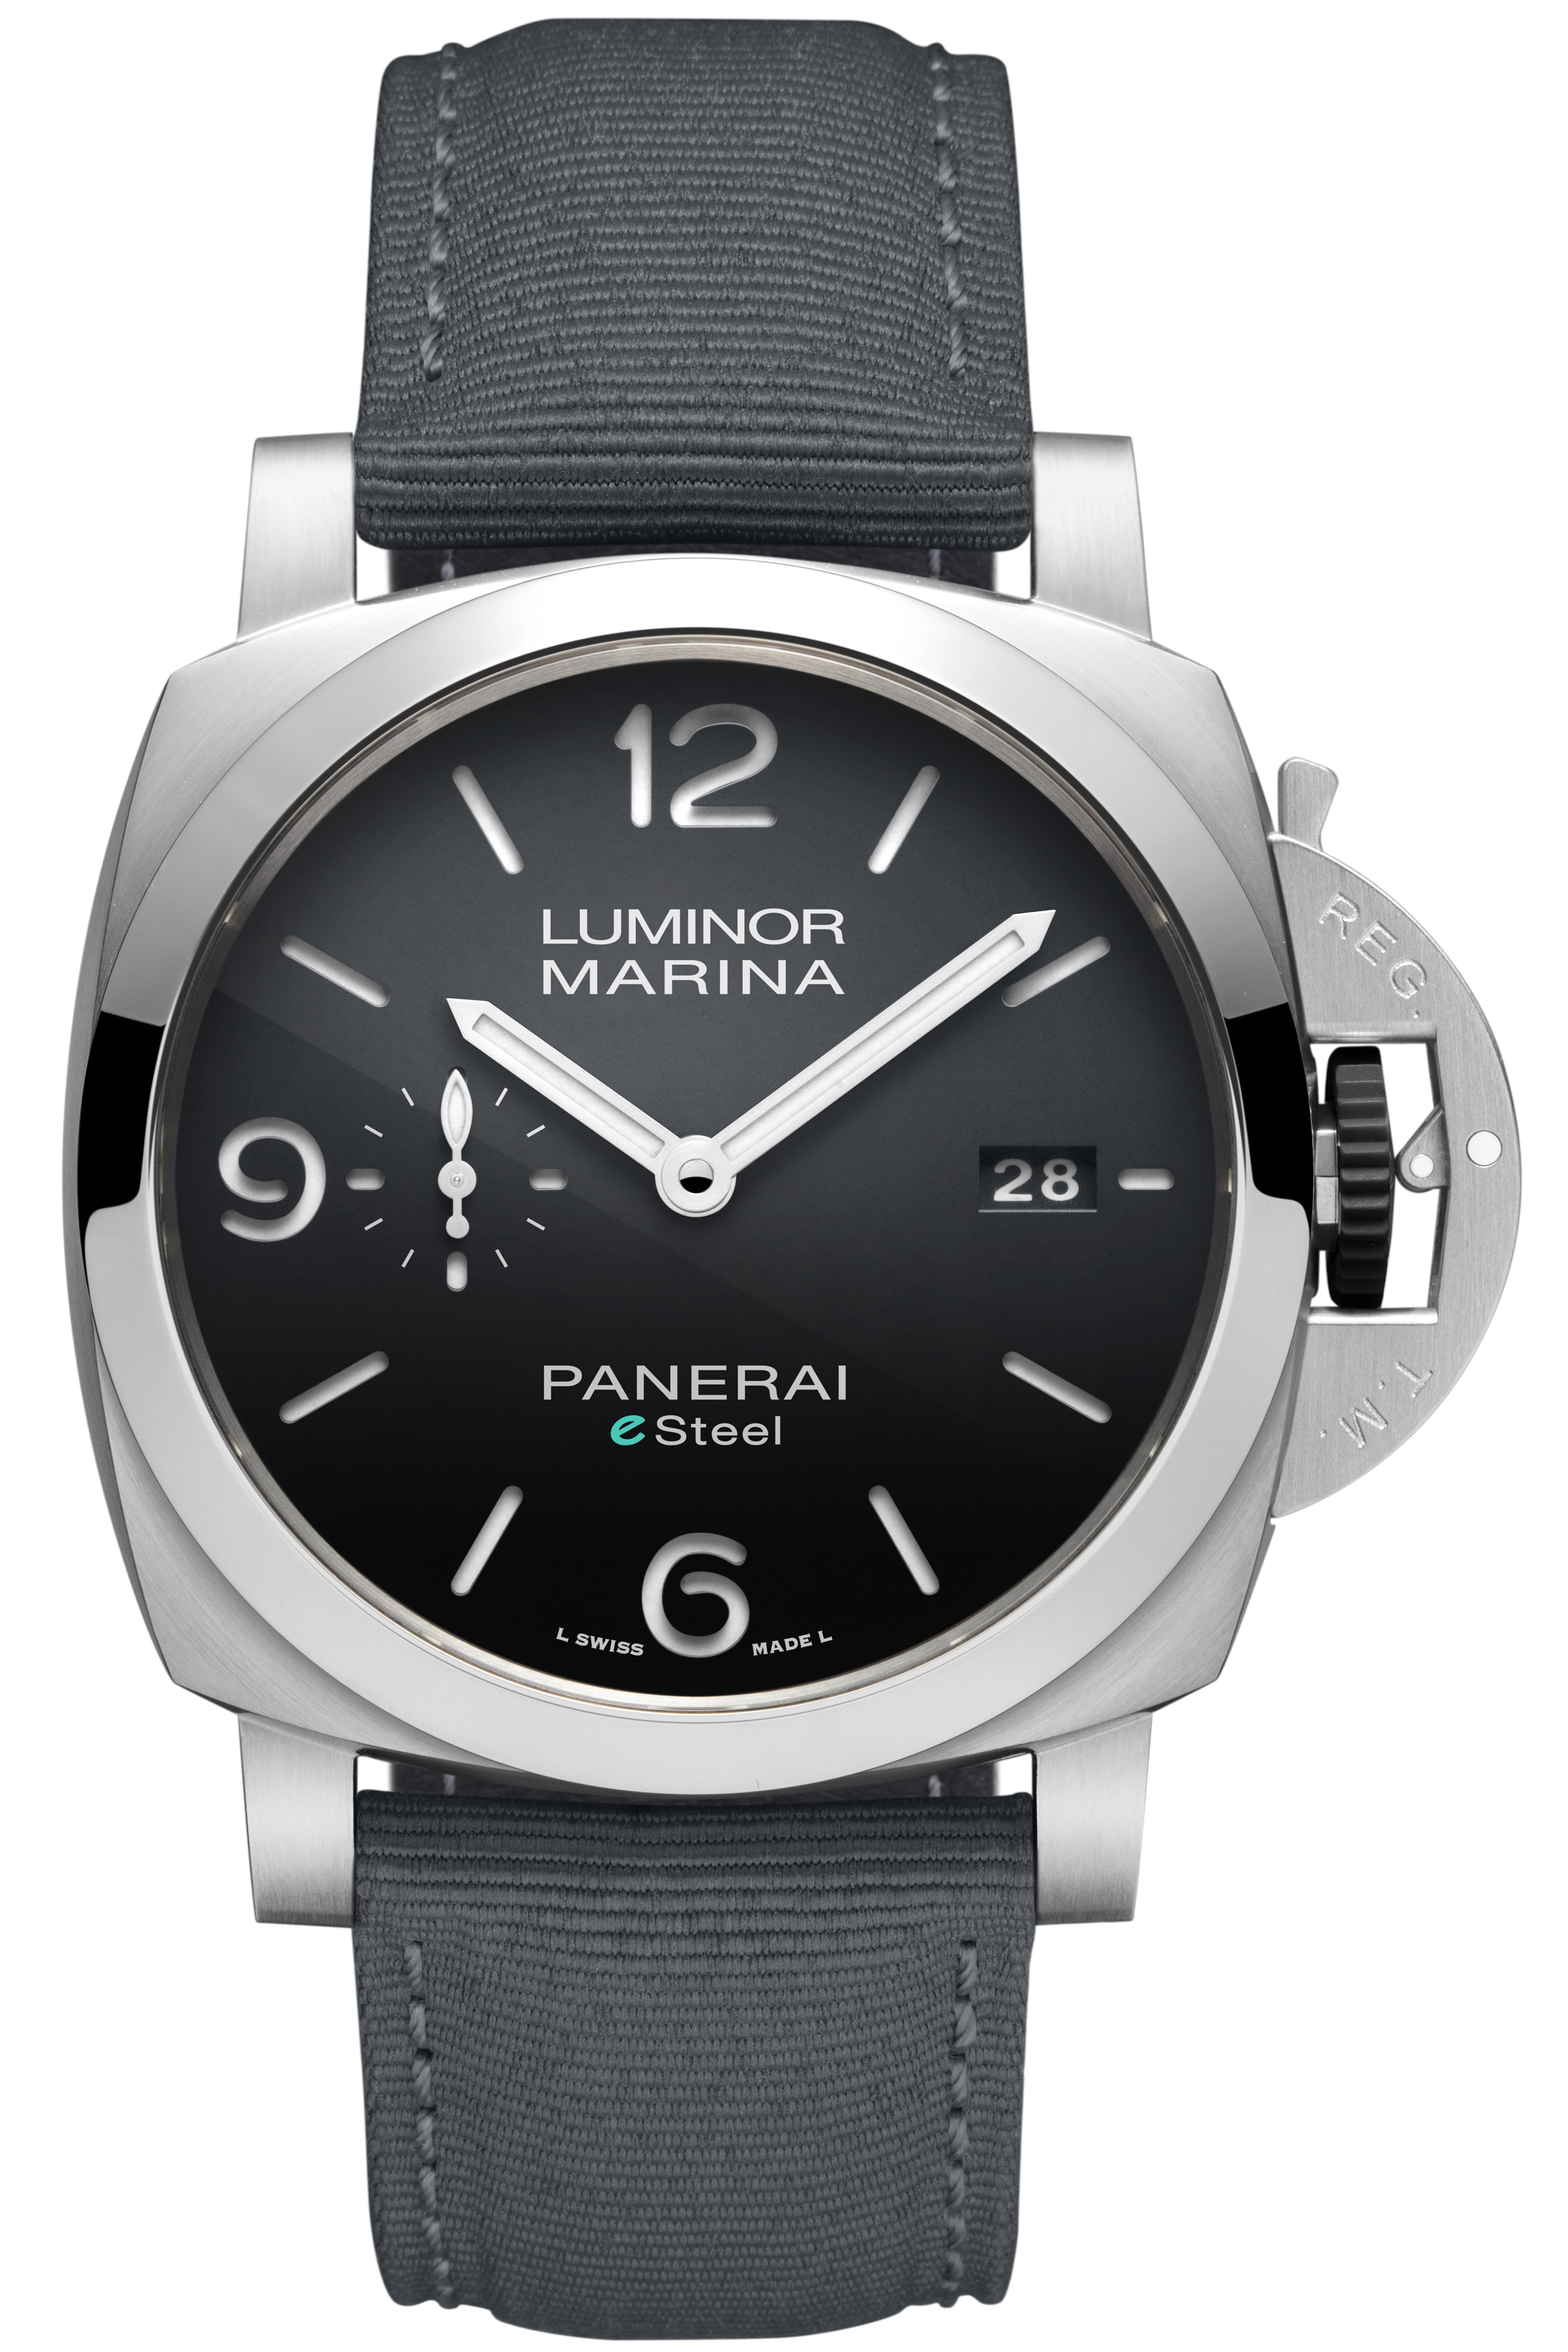 生産終了 パネライ ルミノール マリーナ 腕時計 - 時計